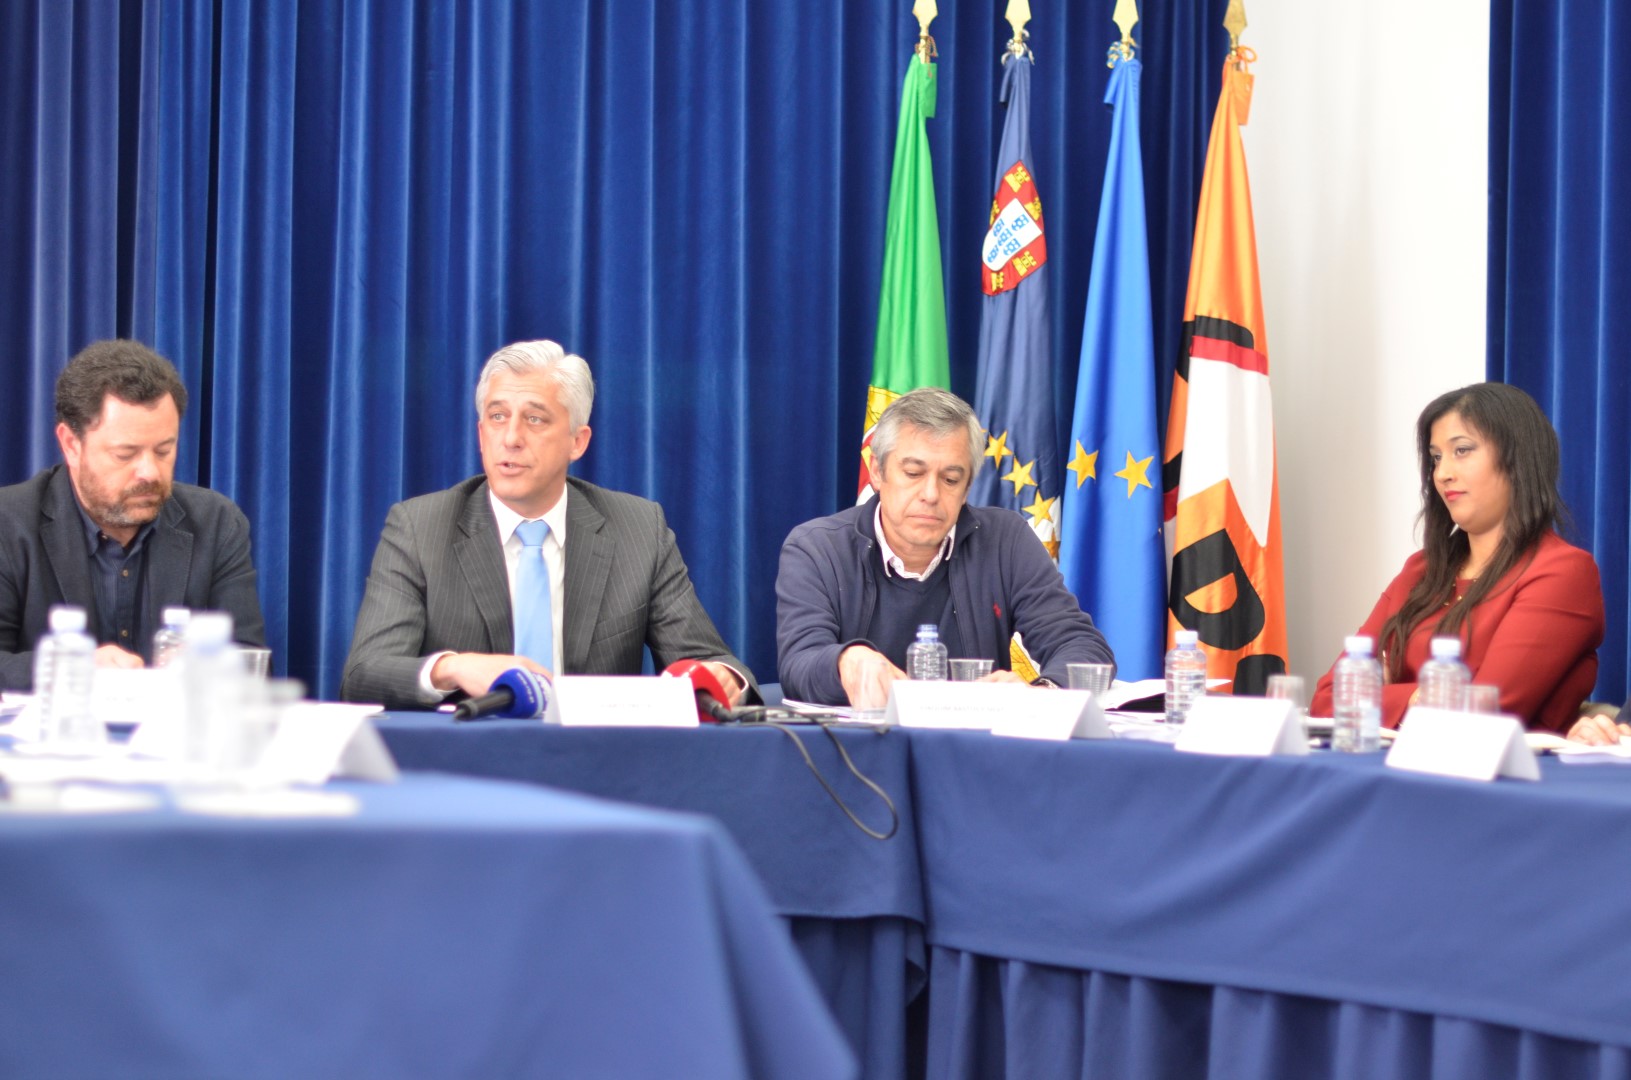 PSD/Açores prepara programa de governo com “equipa de excelência”